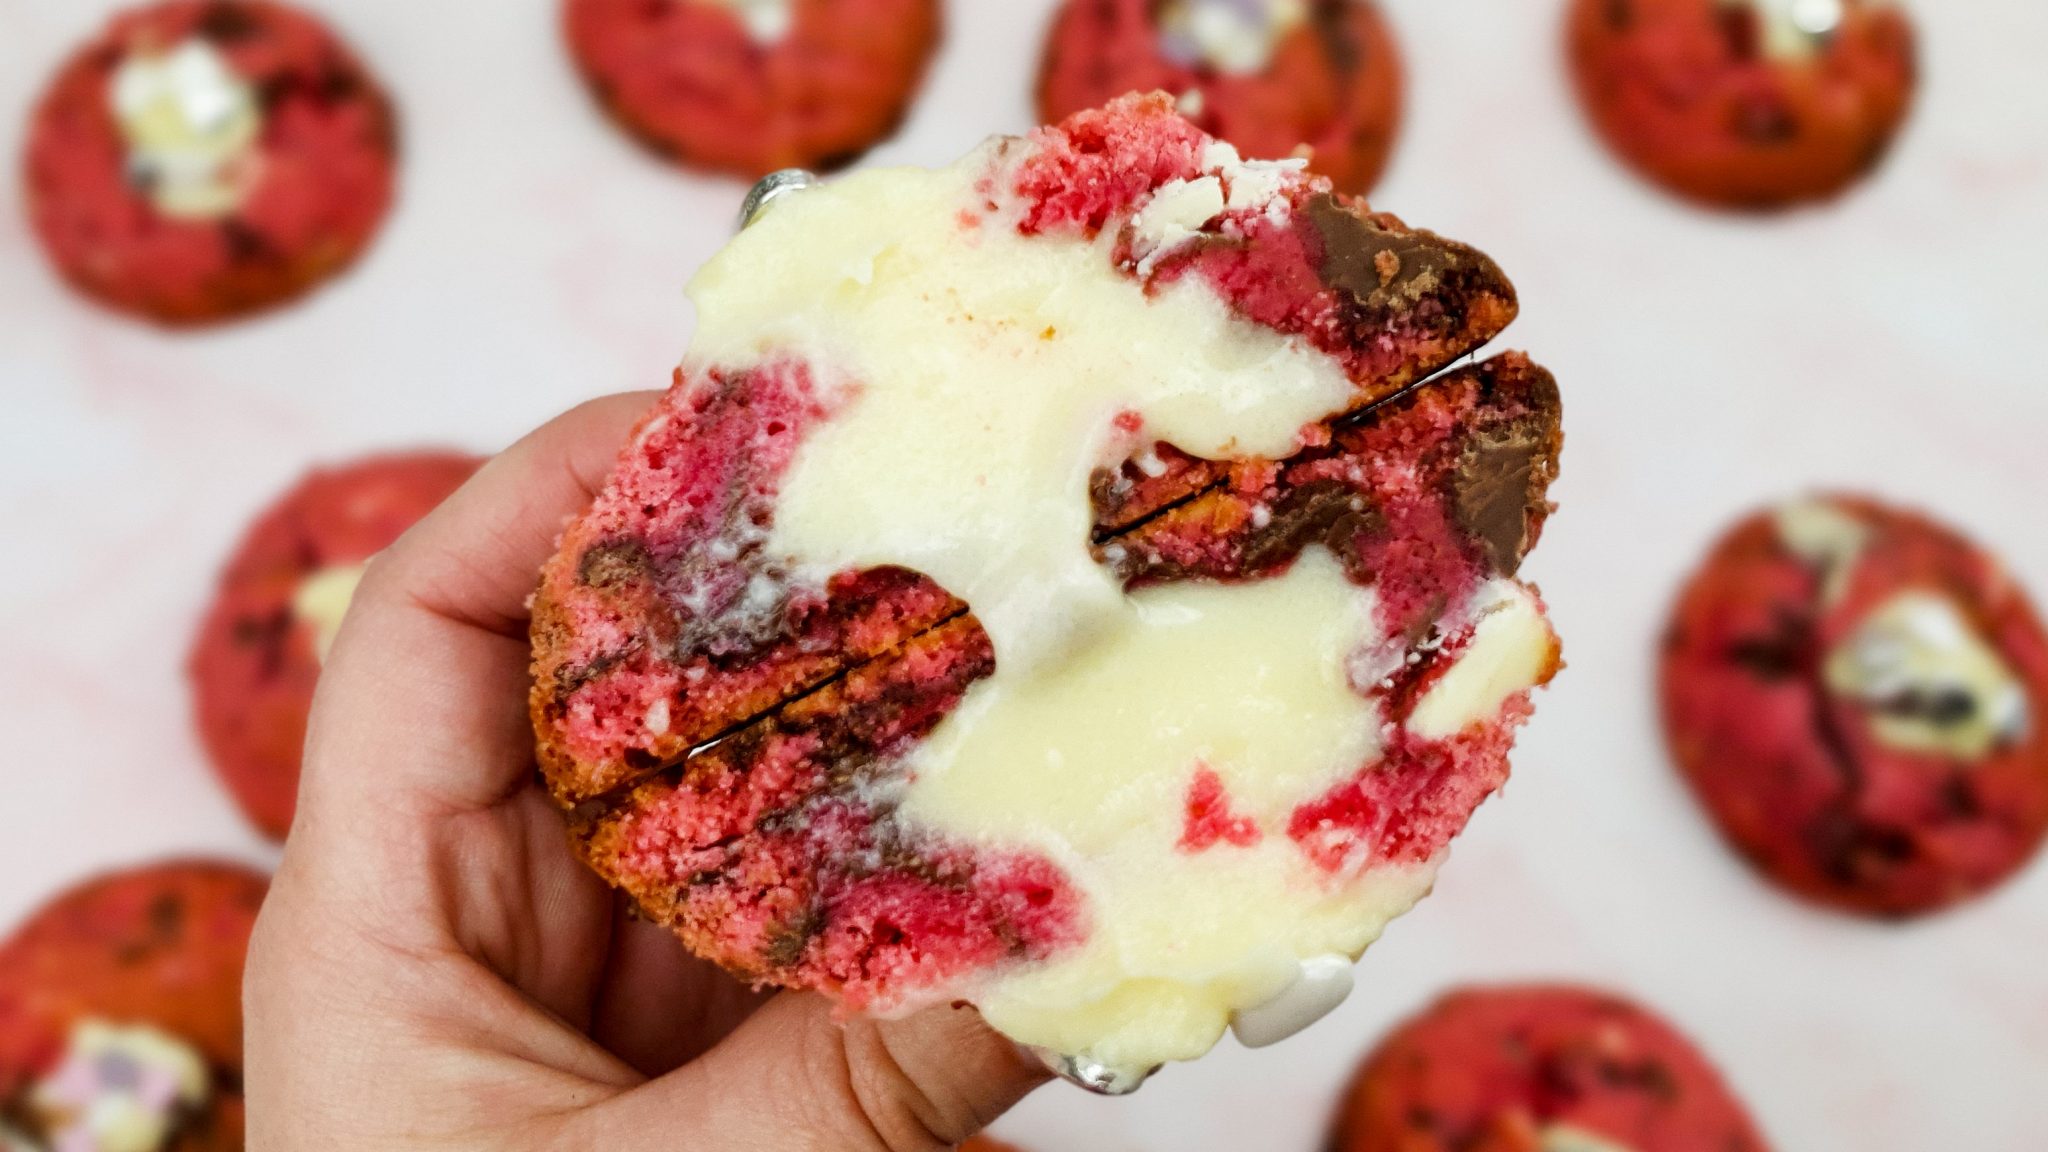 Valentijnskoekjes: Pink velvet cookies